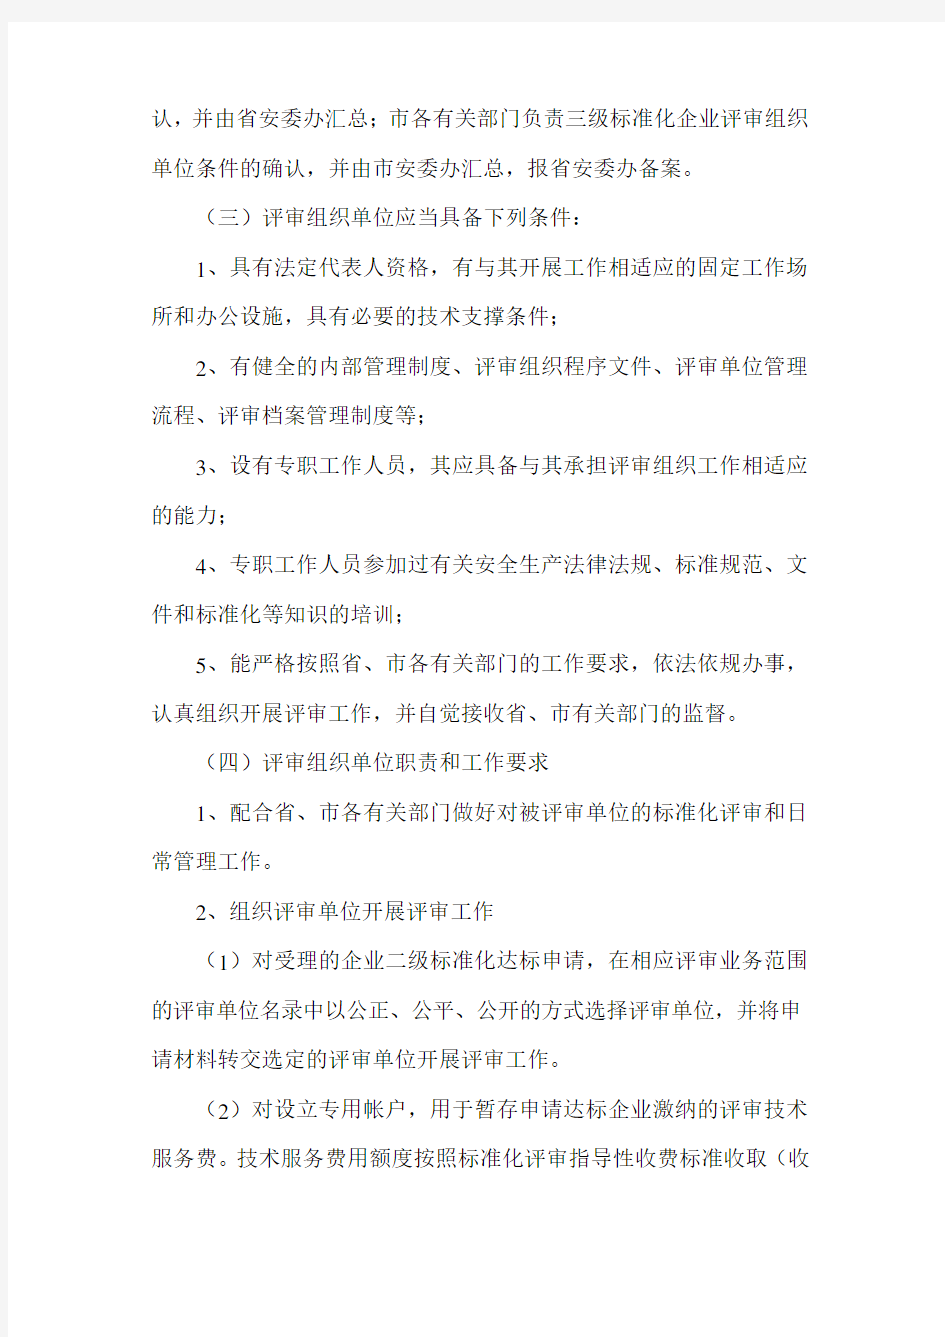 江苏省企业安全生产标准化评审工作管理办法(苏安办〔2011〕38号)